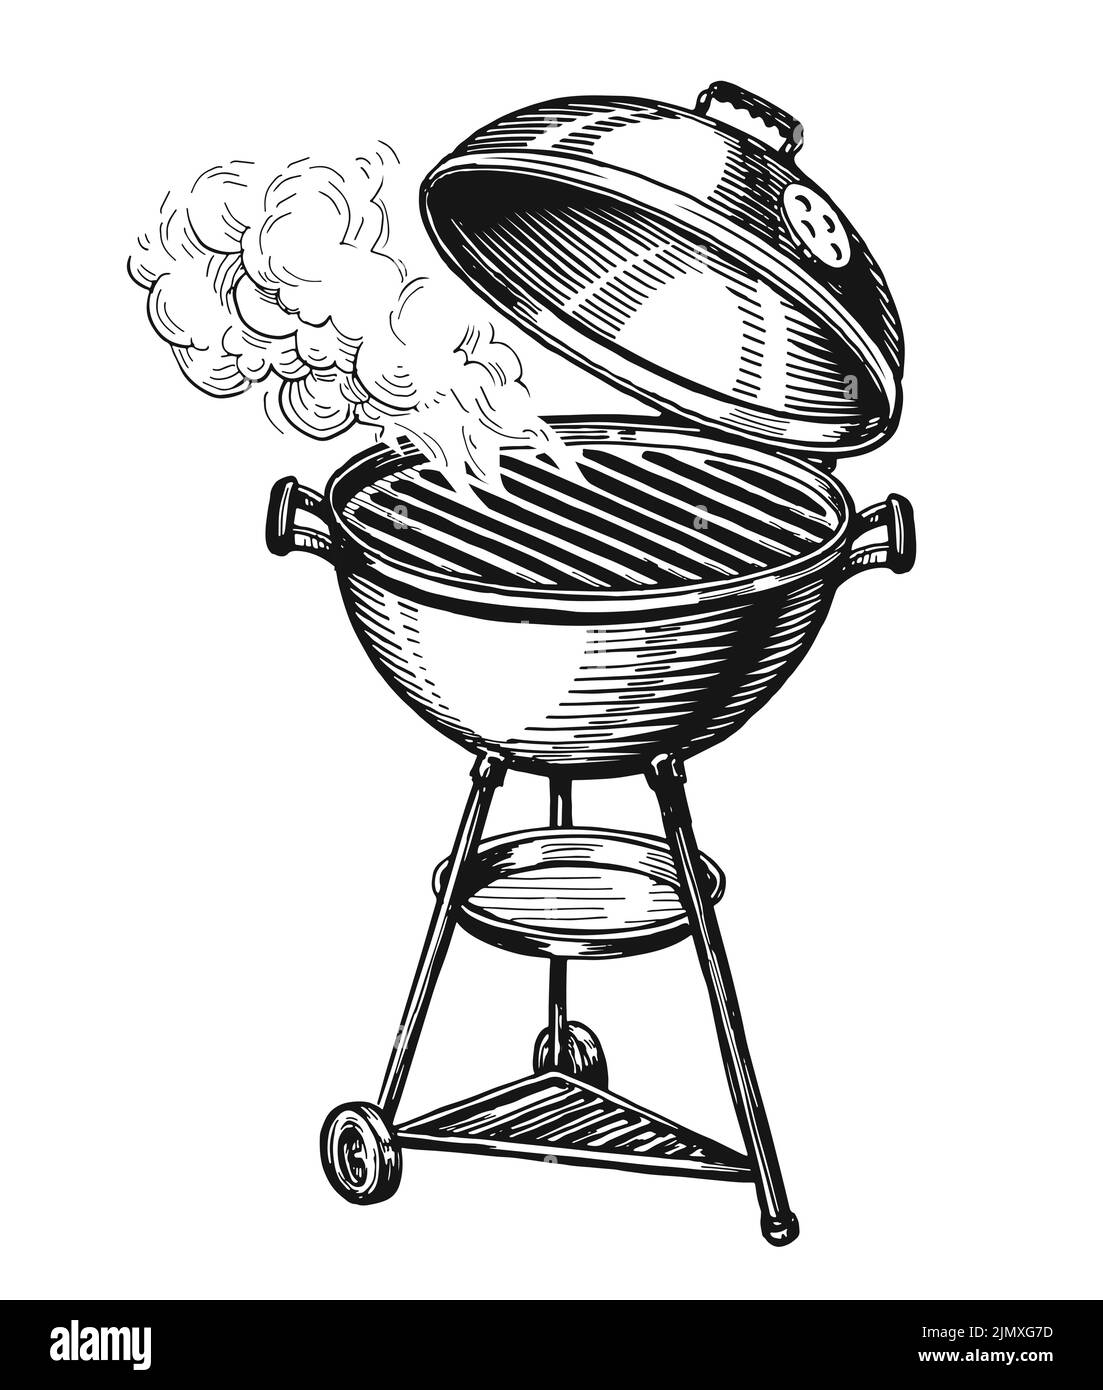 BBQ Grill isoliert. Barbecue-Brazier mit Rauch. Kebab, Konzept für gegrillte Speisen. Handgezeichnete Skizzenvektordarstellung Stock Vektor